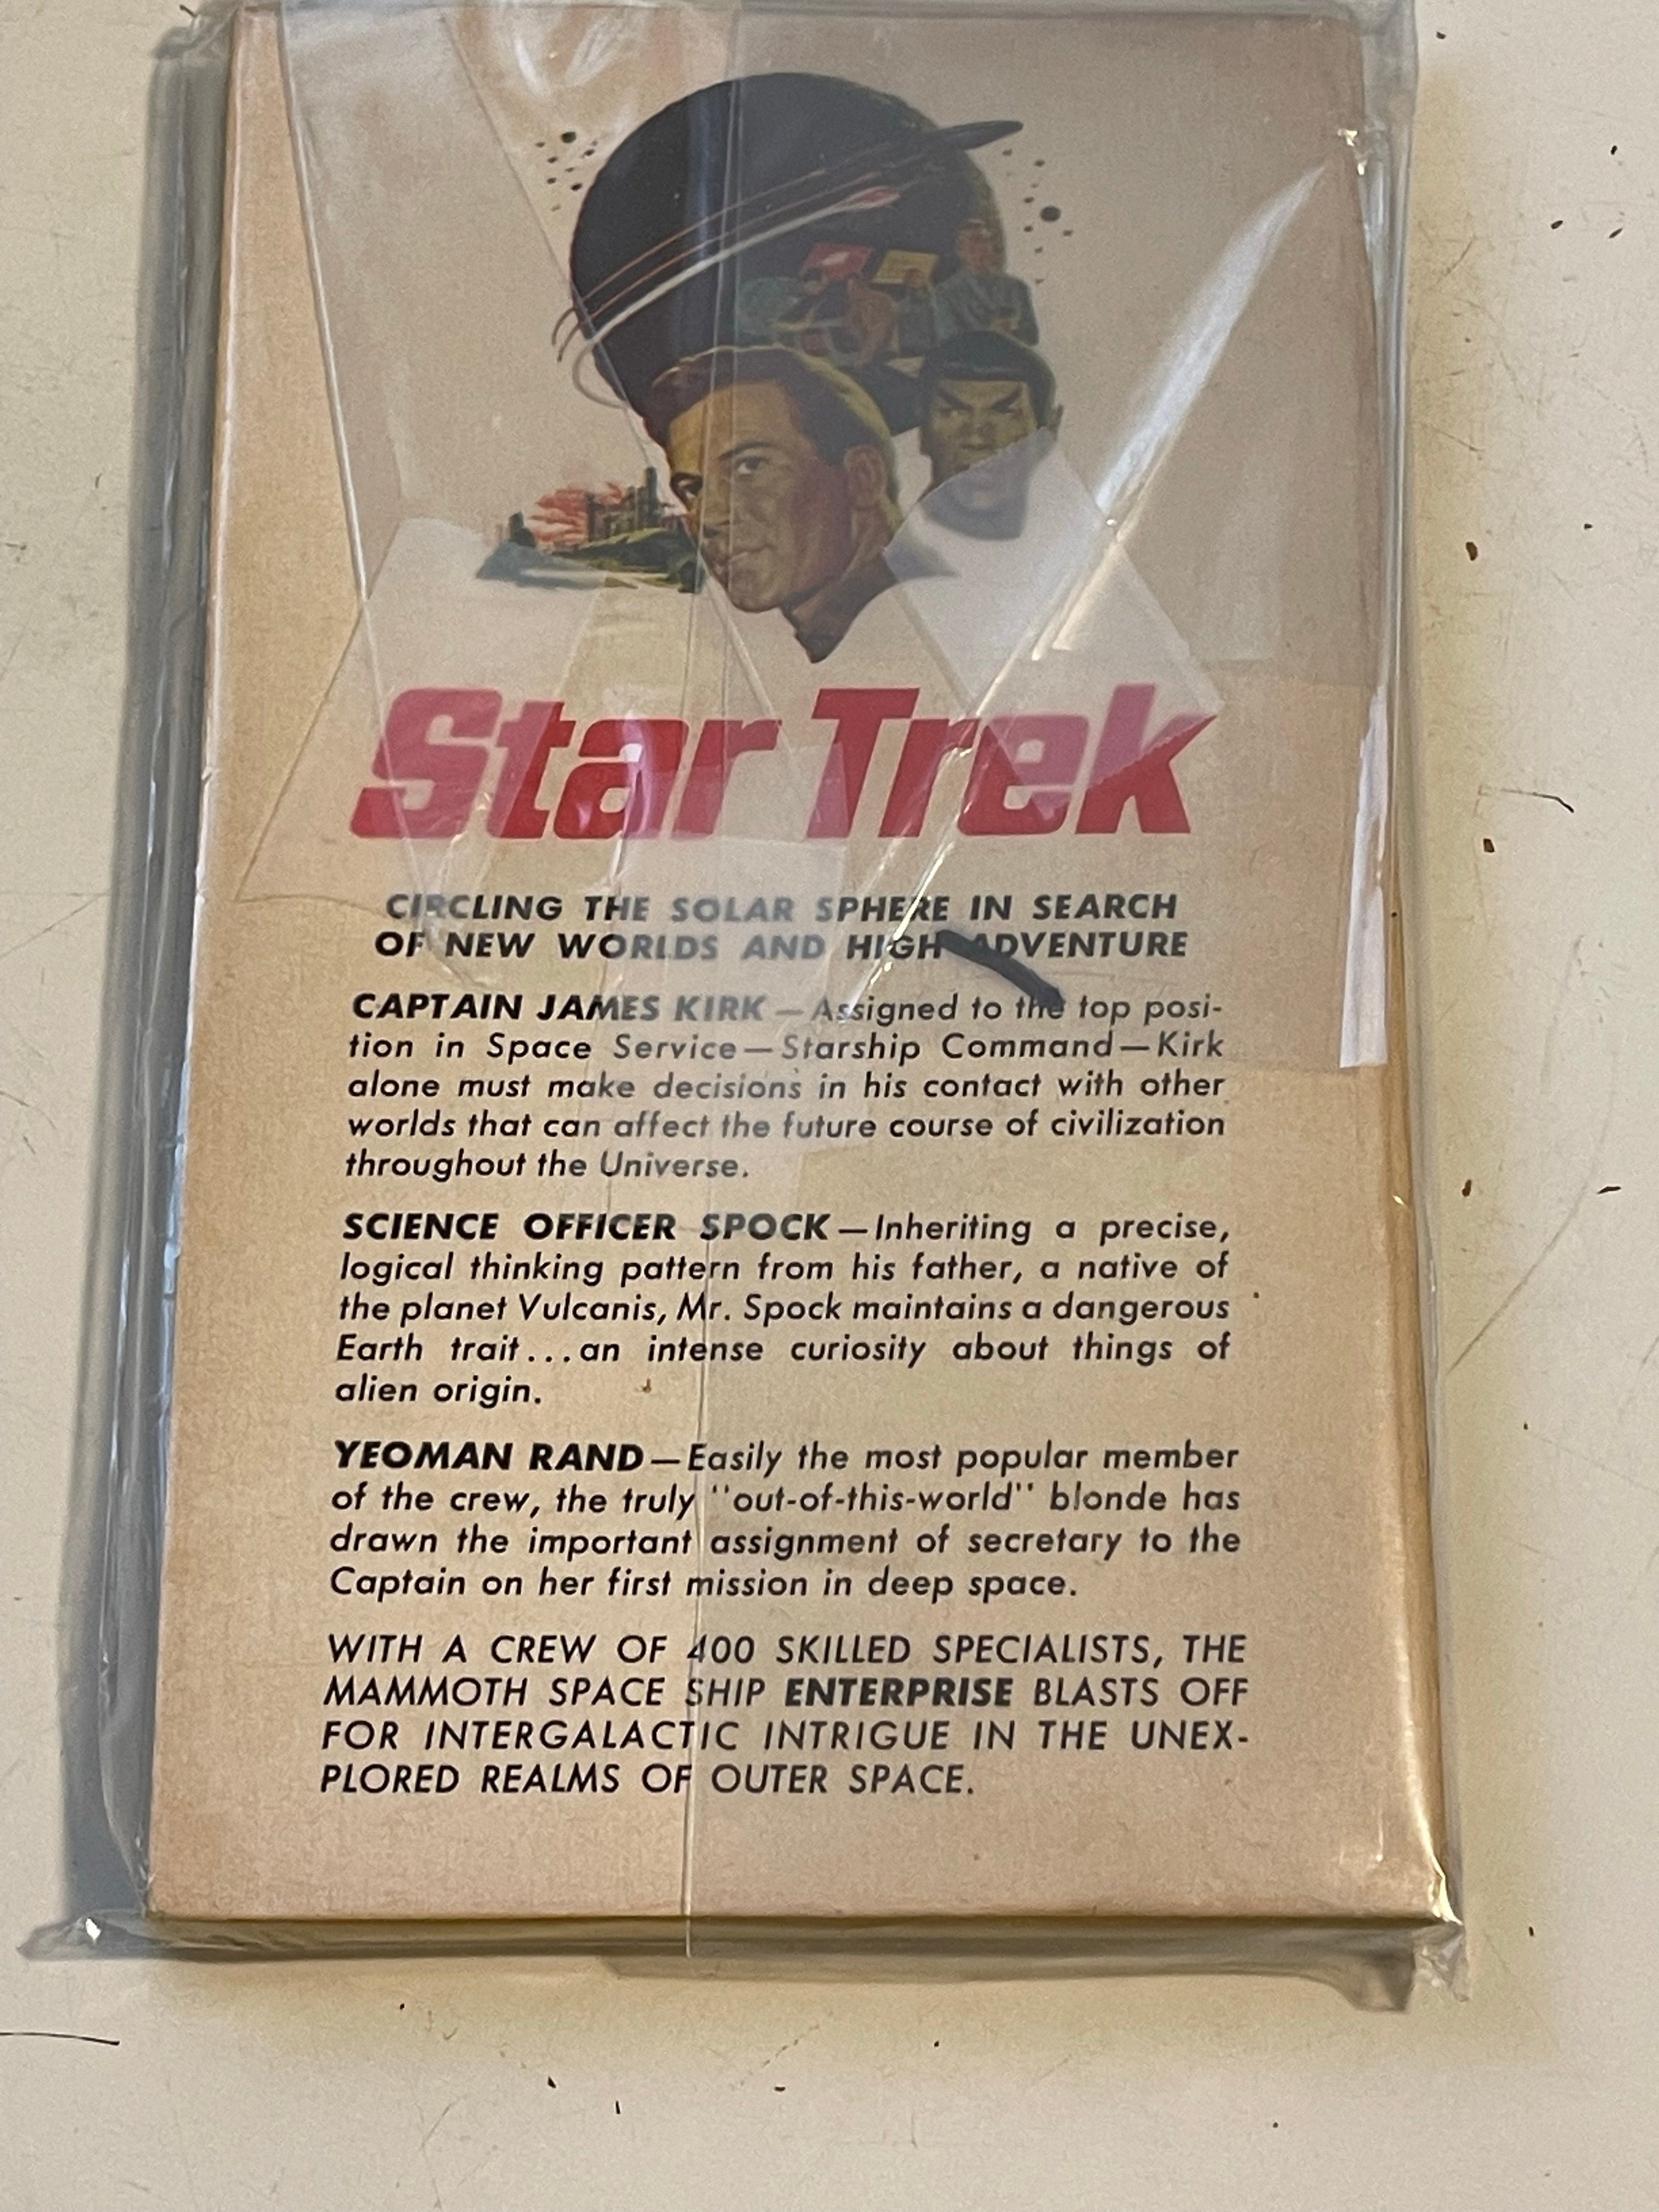 Star Trek Original series first book novel 1967